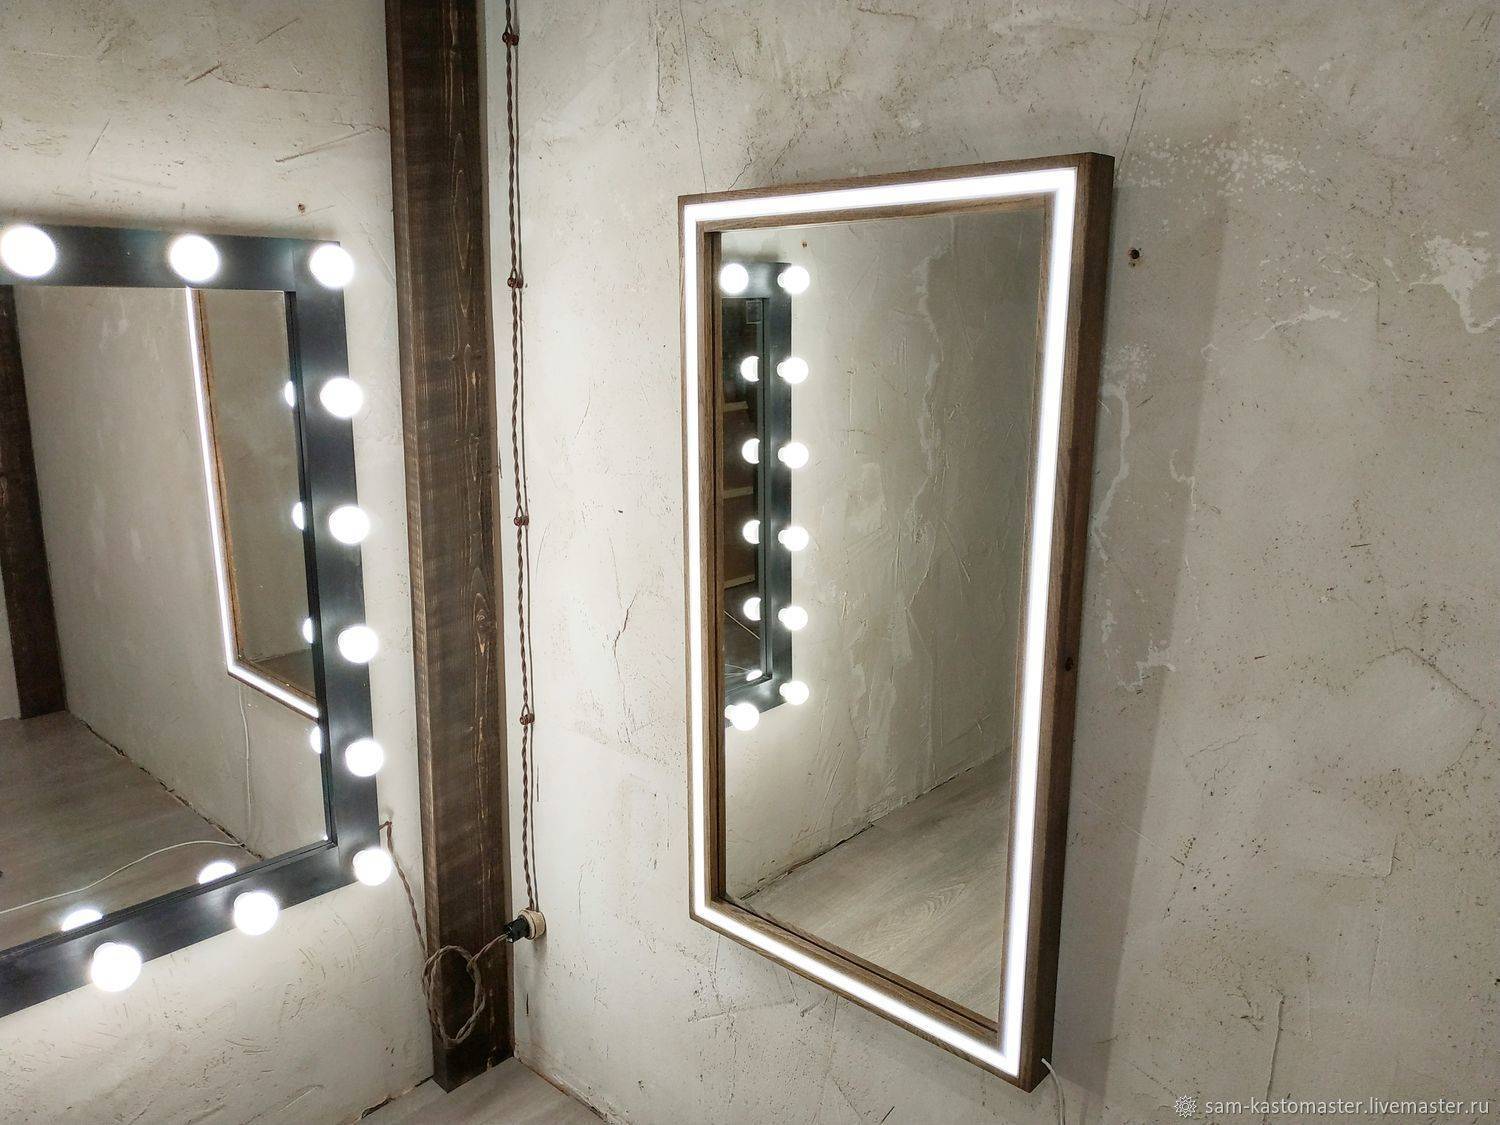 Зеркало с подсветкой своими руками: пошаговая инструкция, как сделать своими руками (100 фото идей)